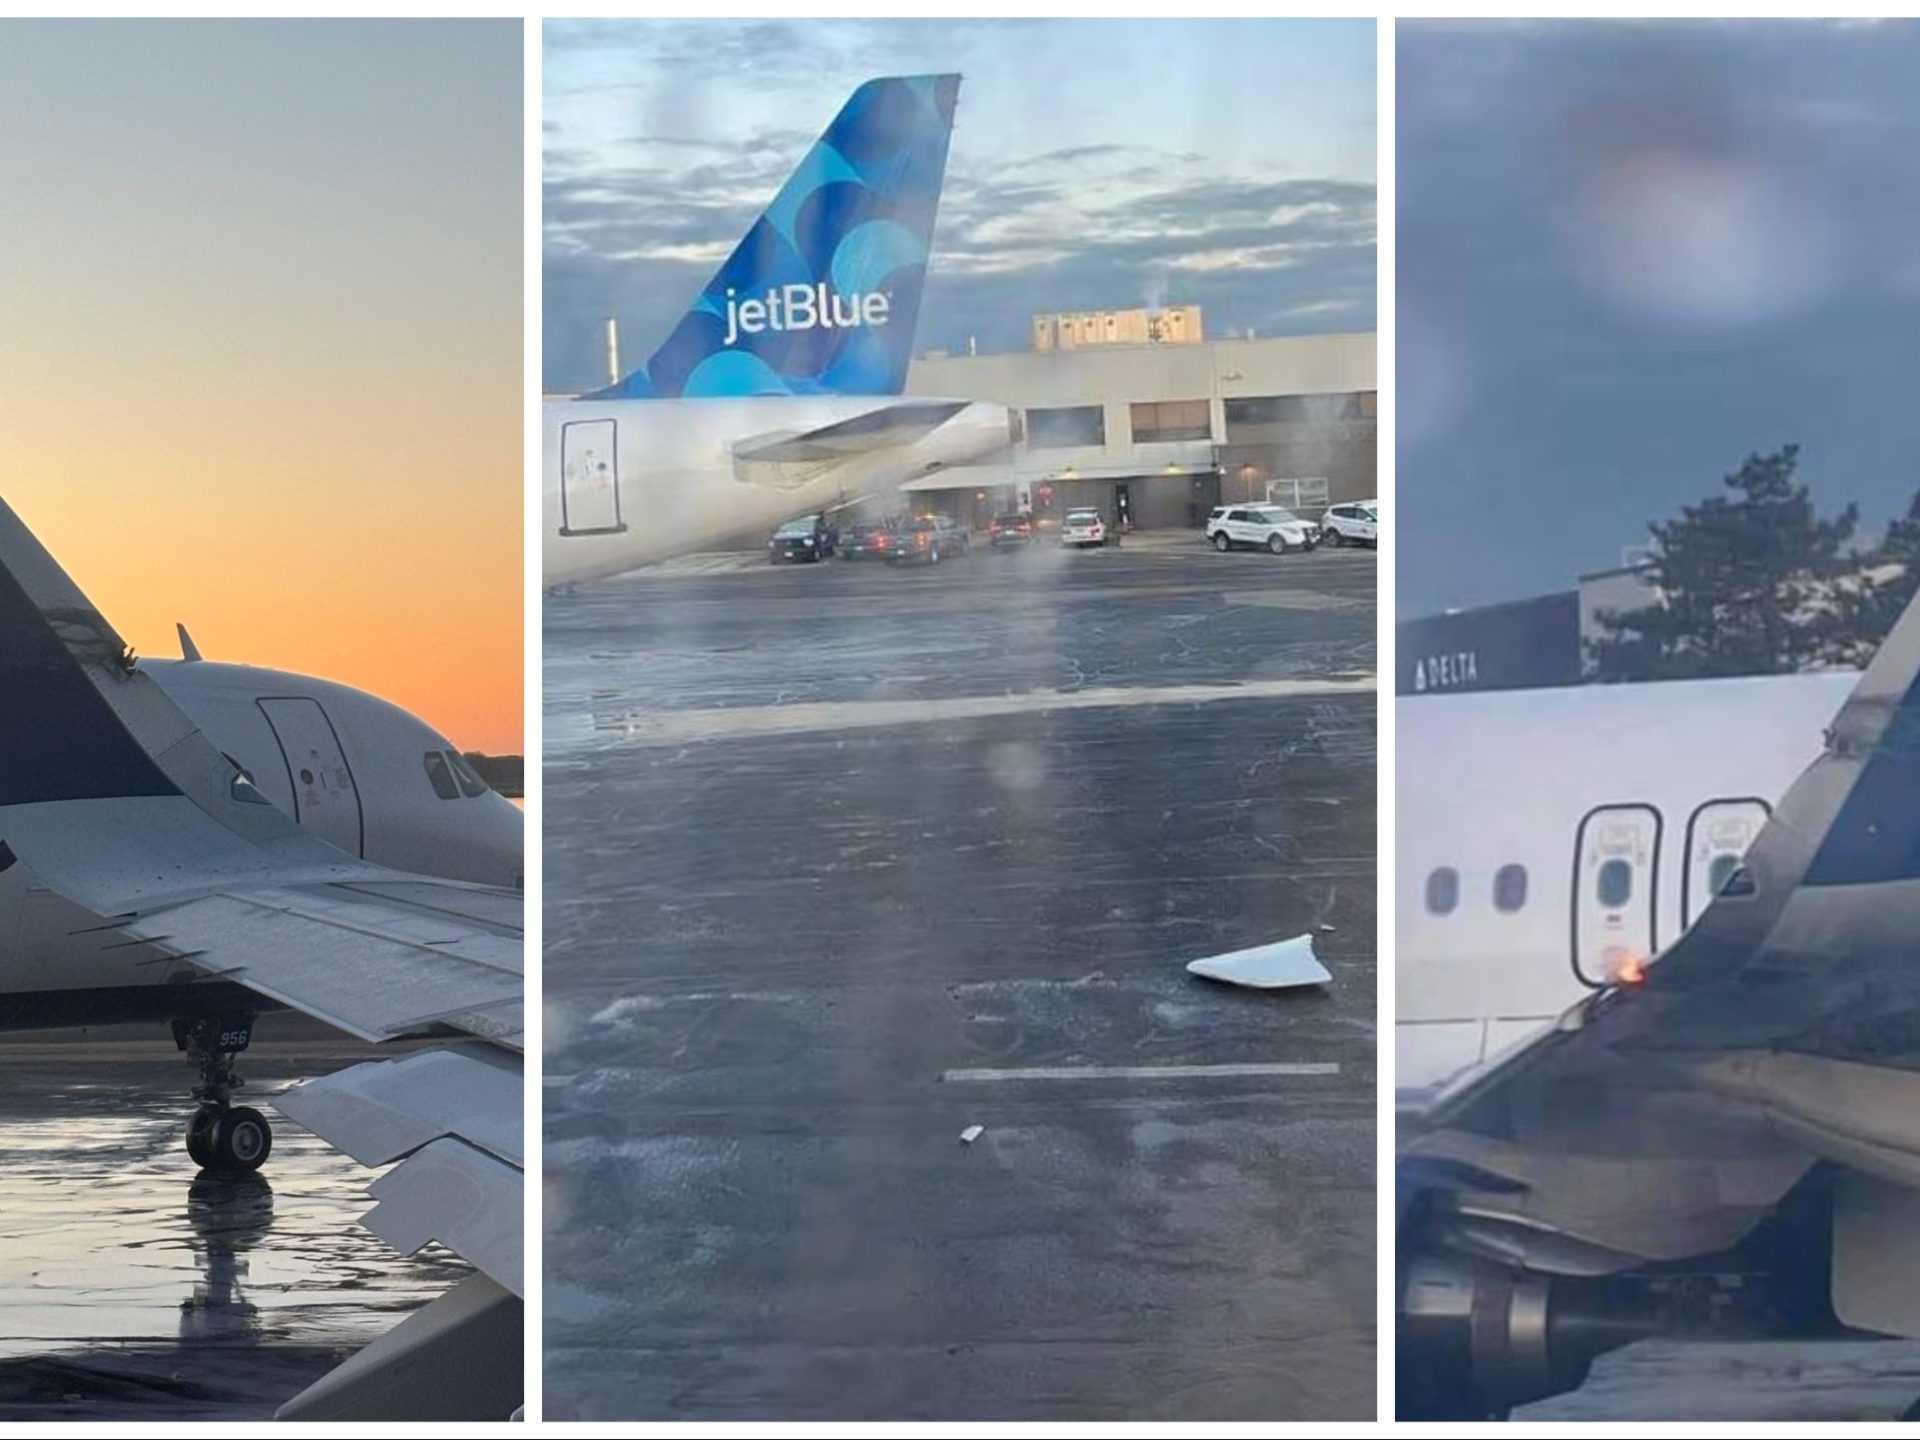 Incidente tra due aerei sulla pista di Boston, si spezza un'ala: panico